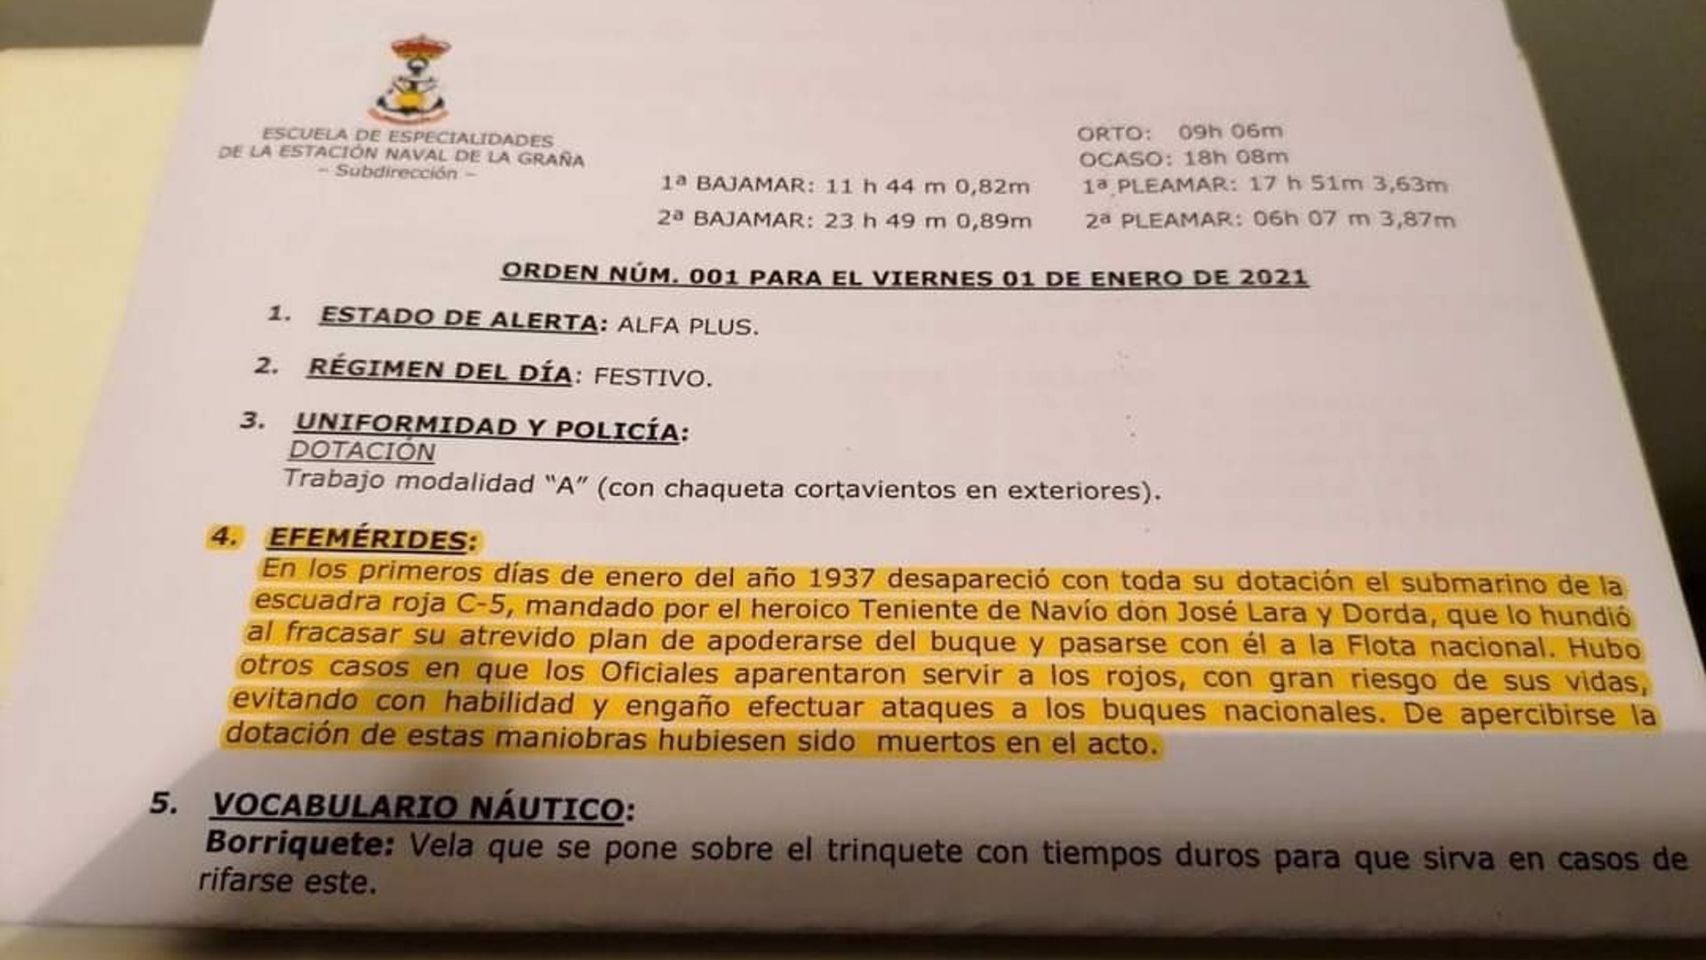 Orden del día 1 de enero de 2020 de la Escuela Naval de la Armada en Ferrol